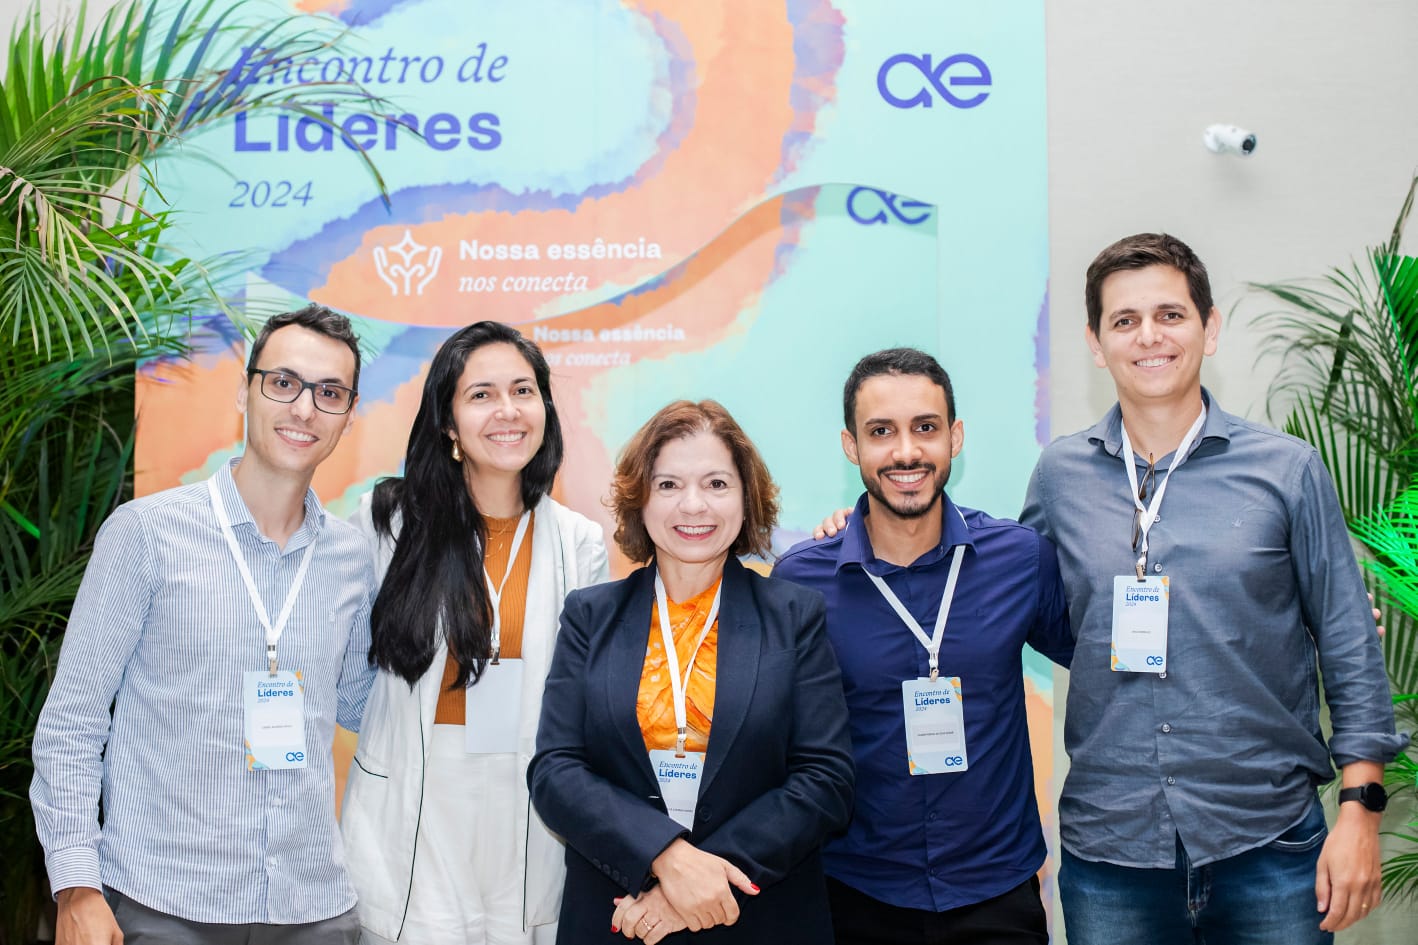 Representantes da regional Aegea de Santa Catarina participam de encontro nacional de lideranças